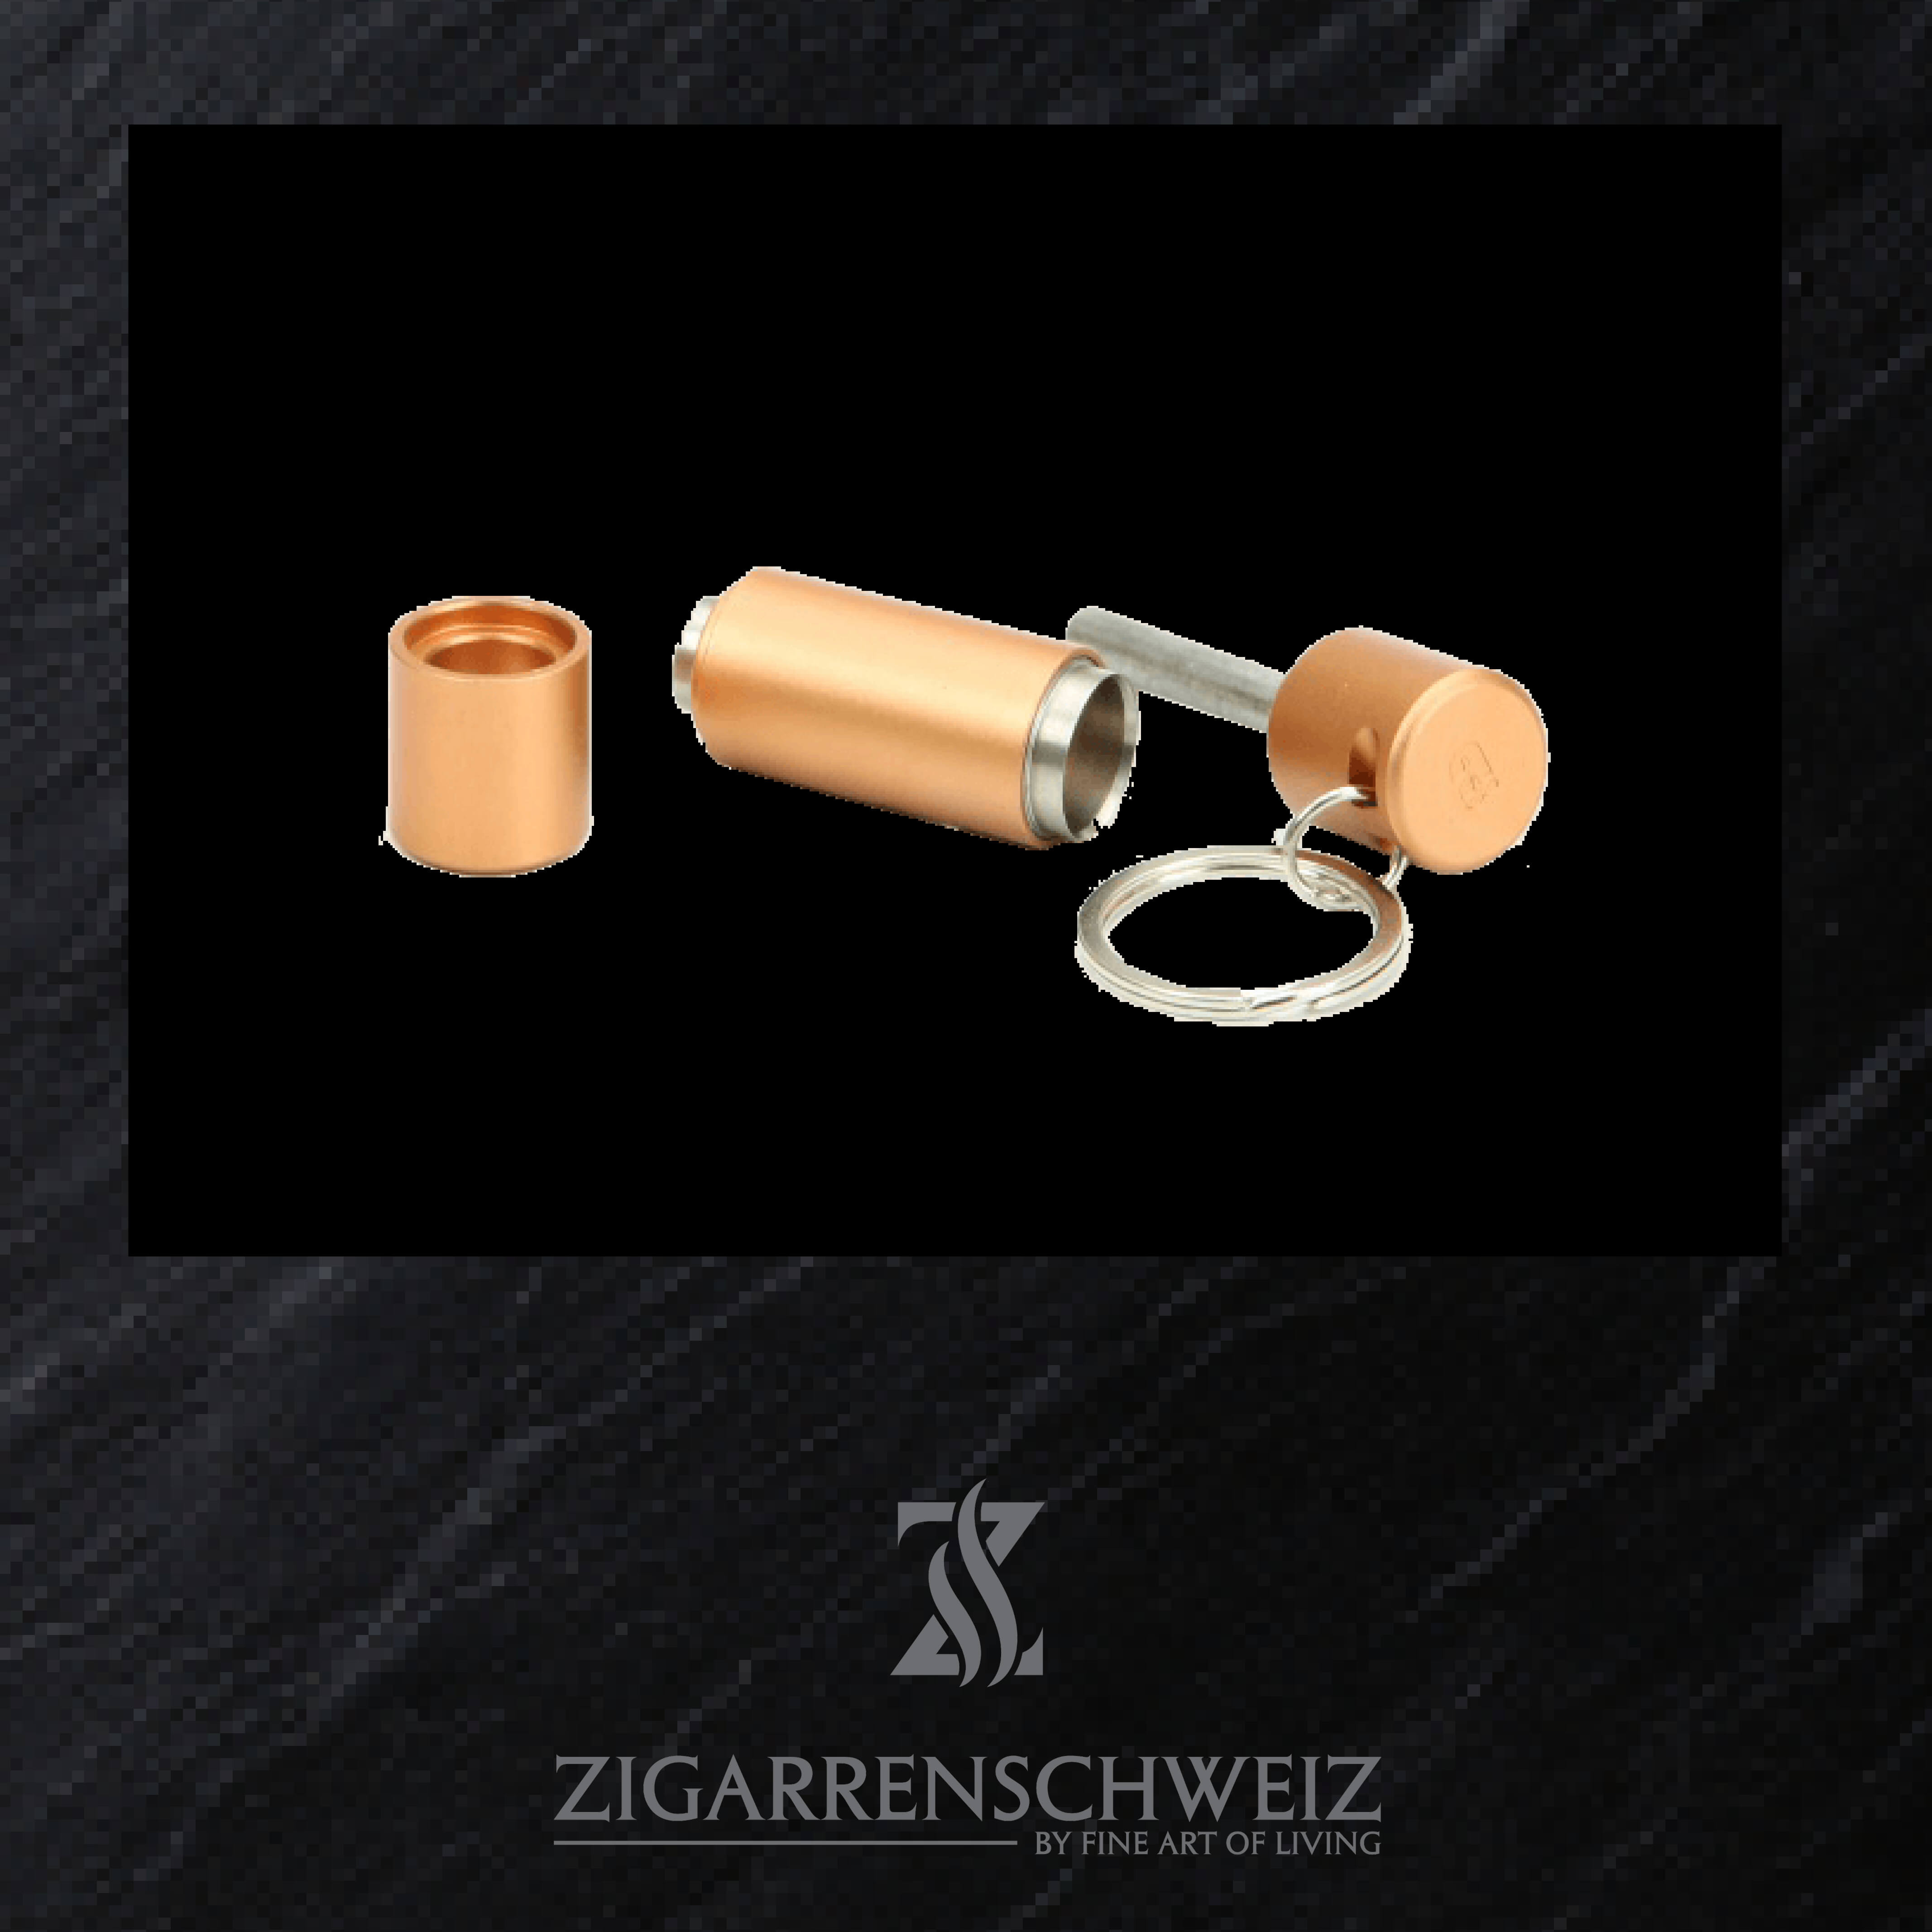 adorini Doppel Zigarrenbohrer (Puncher), Solingerklingen; Farbe: Kupfer